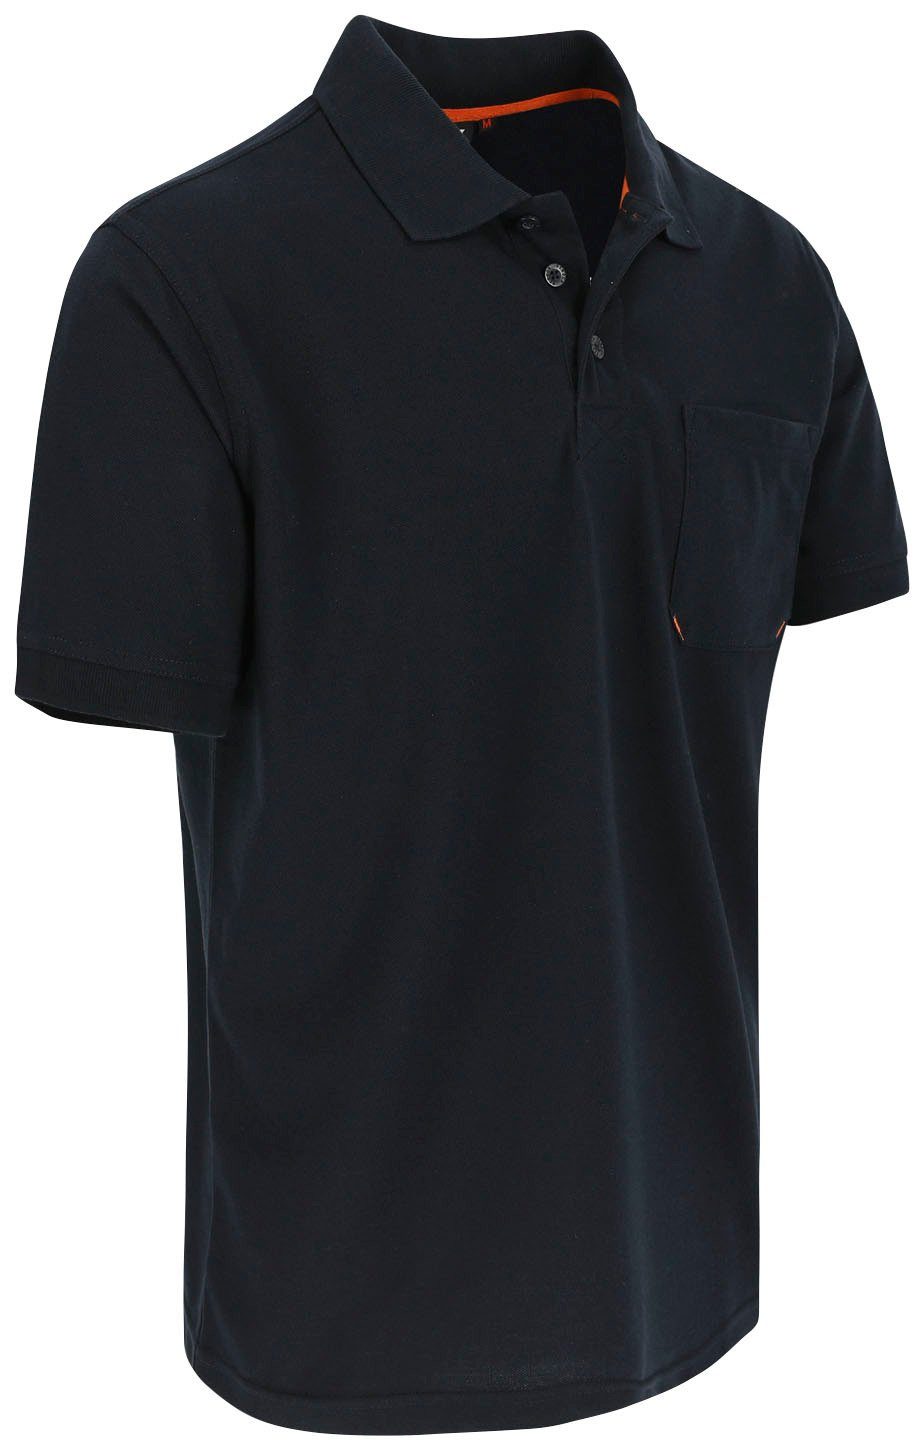 Bündchen, Farben Kurzärmlig verschiedene Polohemd 1 marine Leo Herock Brusttasche, Rippstrick-Kragen Poloshirt und